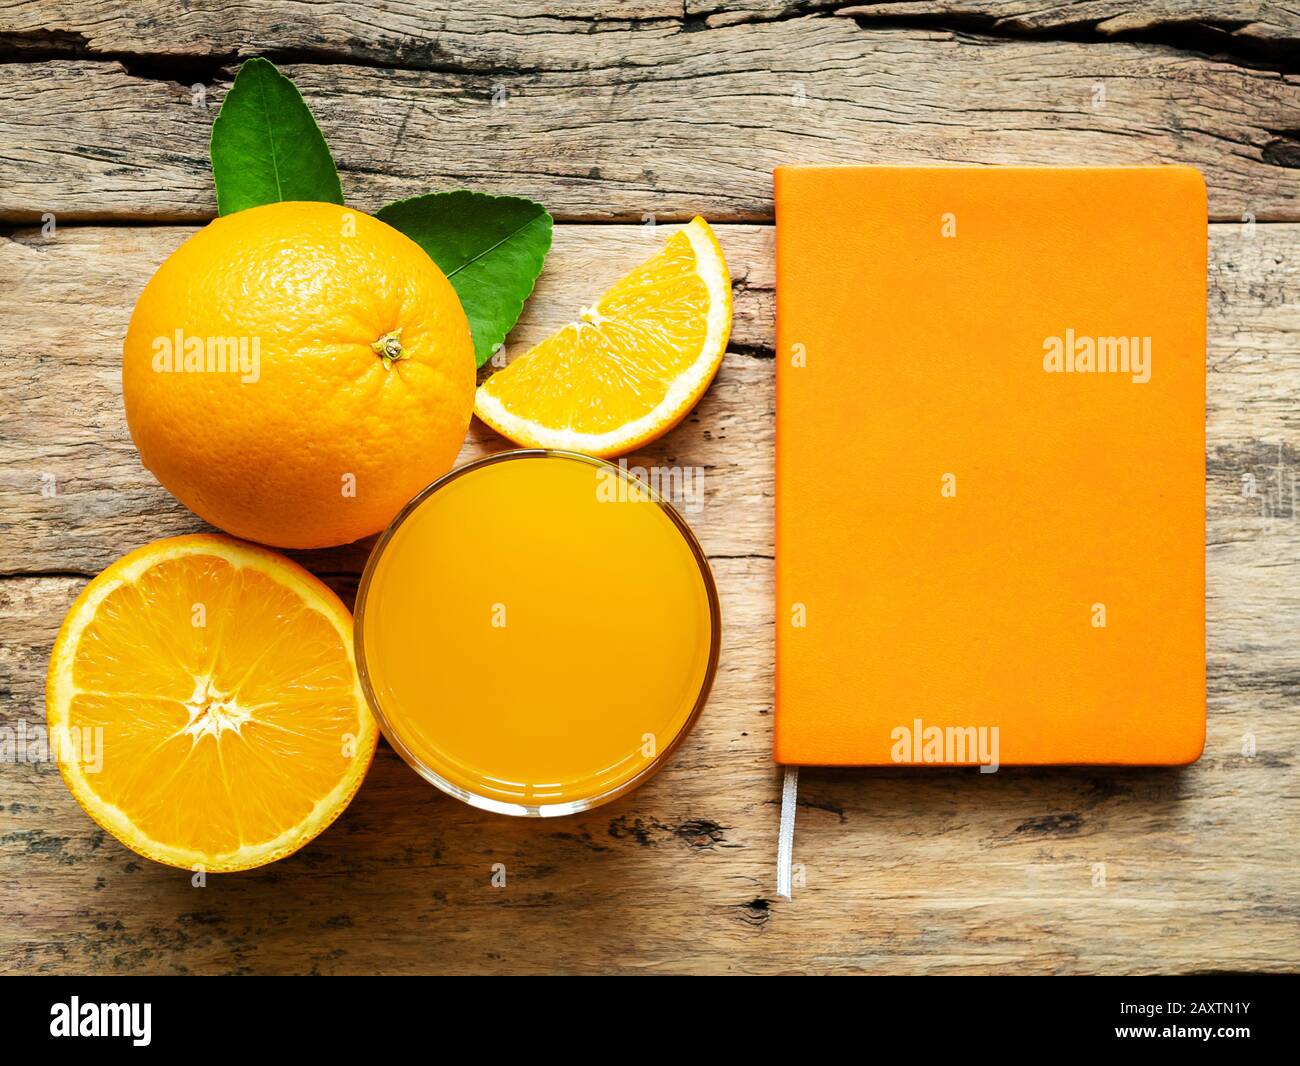 Ein Glas frischen Orangensaft und eine Gruppe frischer Orangenfrüchte mit grünen Blättern auf Holzhintergrund mit orangefarbener Buchfarbe. Vitamin C und fru Stockfoto